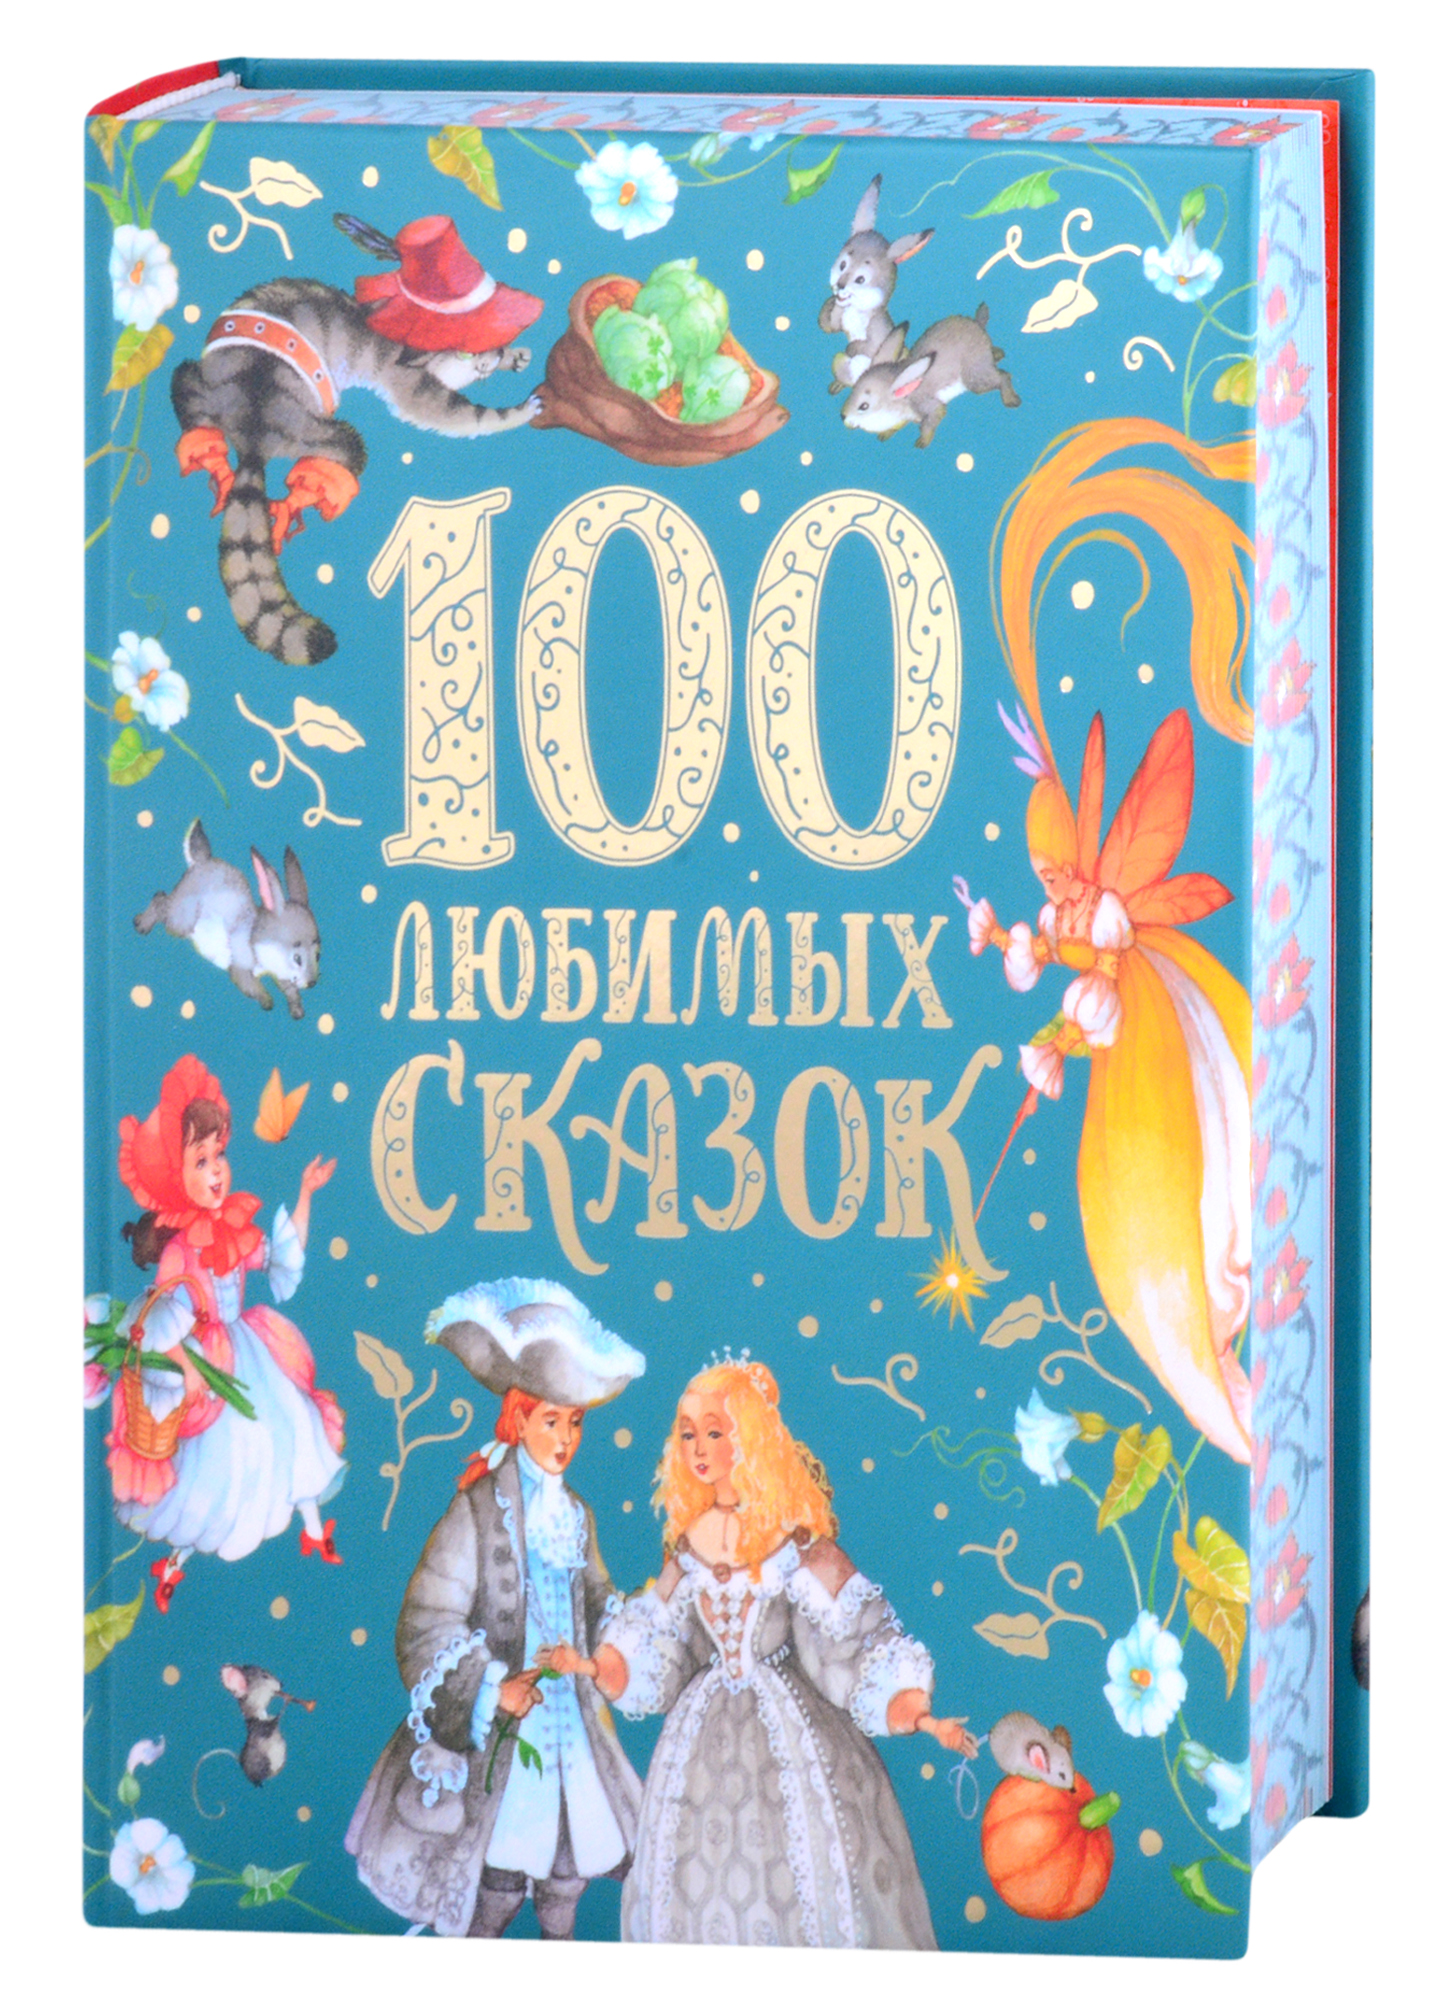 Пушкин Александр Сергеевич 100 любимых сказок царская дочка и находчивый юноша украинские народные сказки